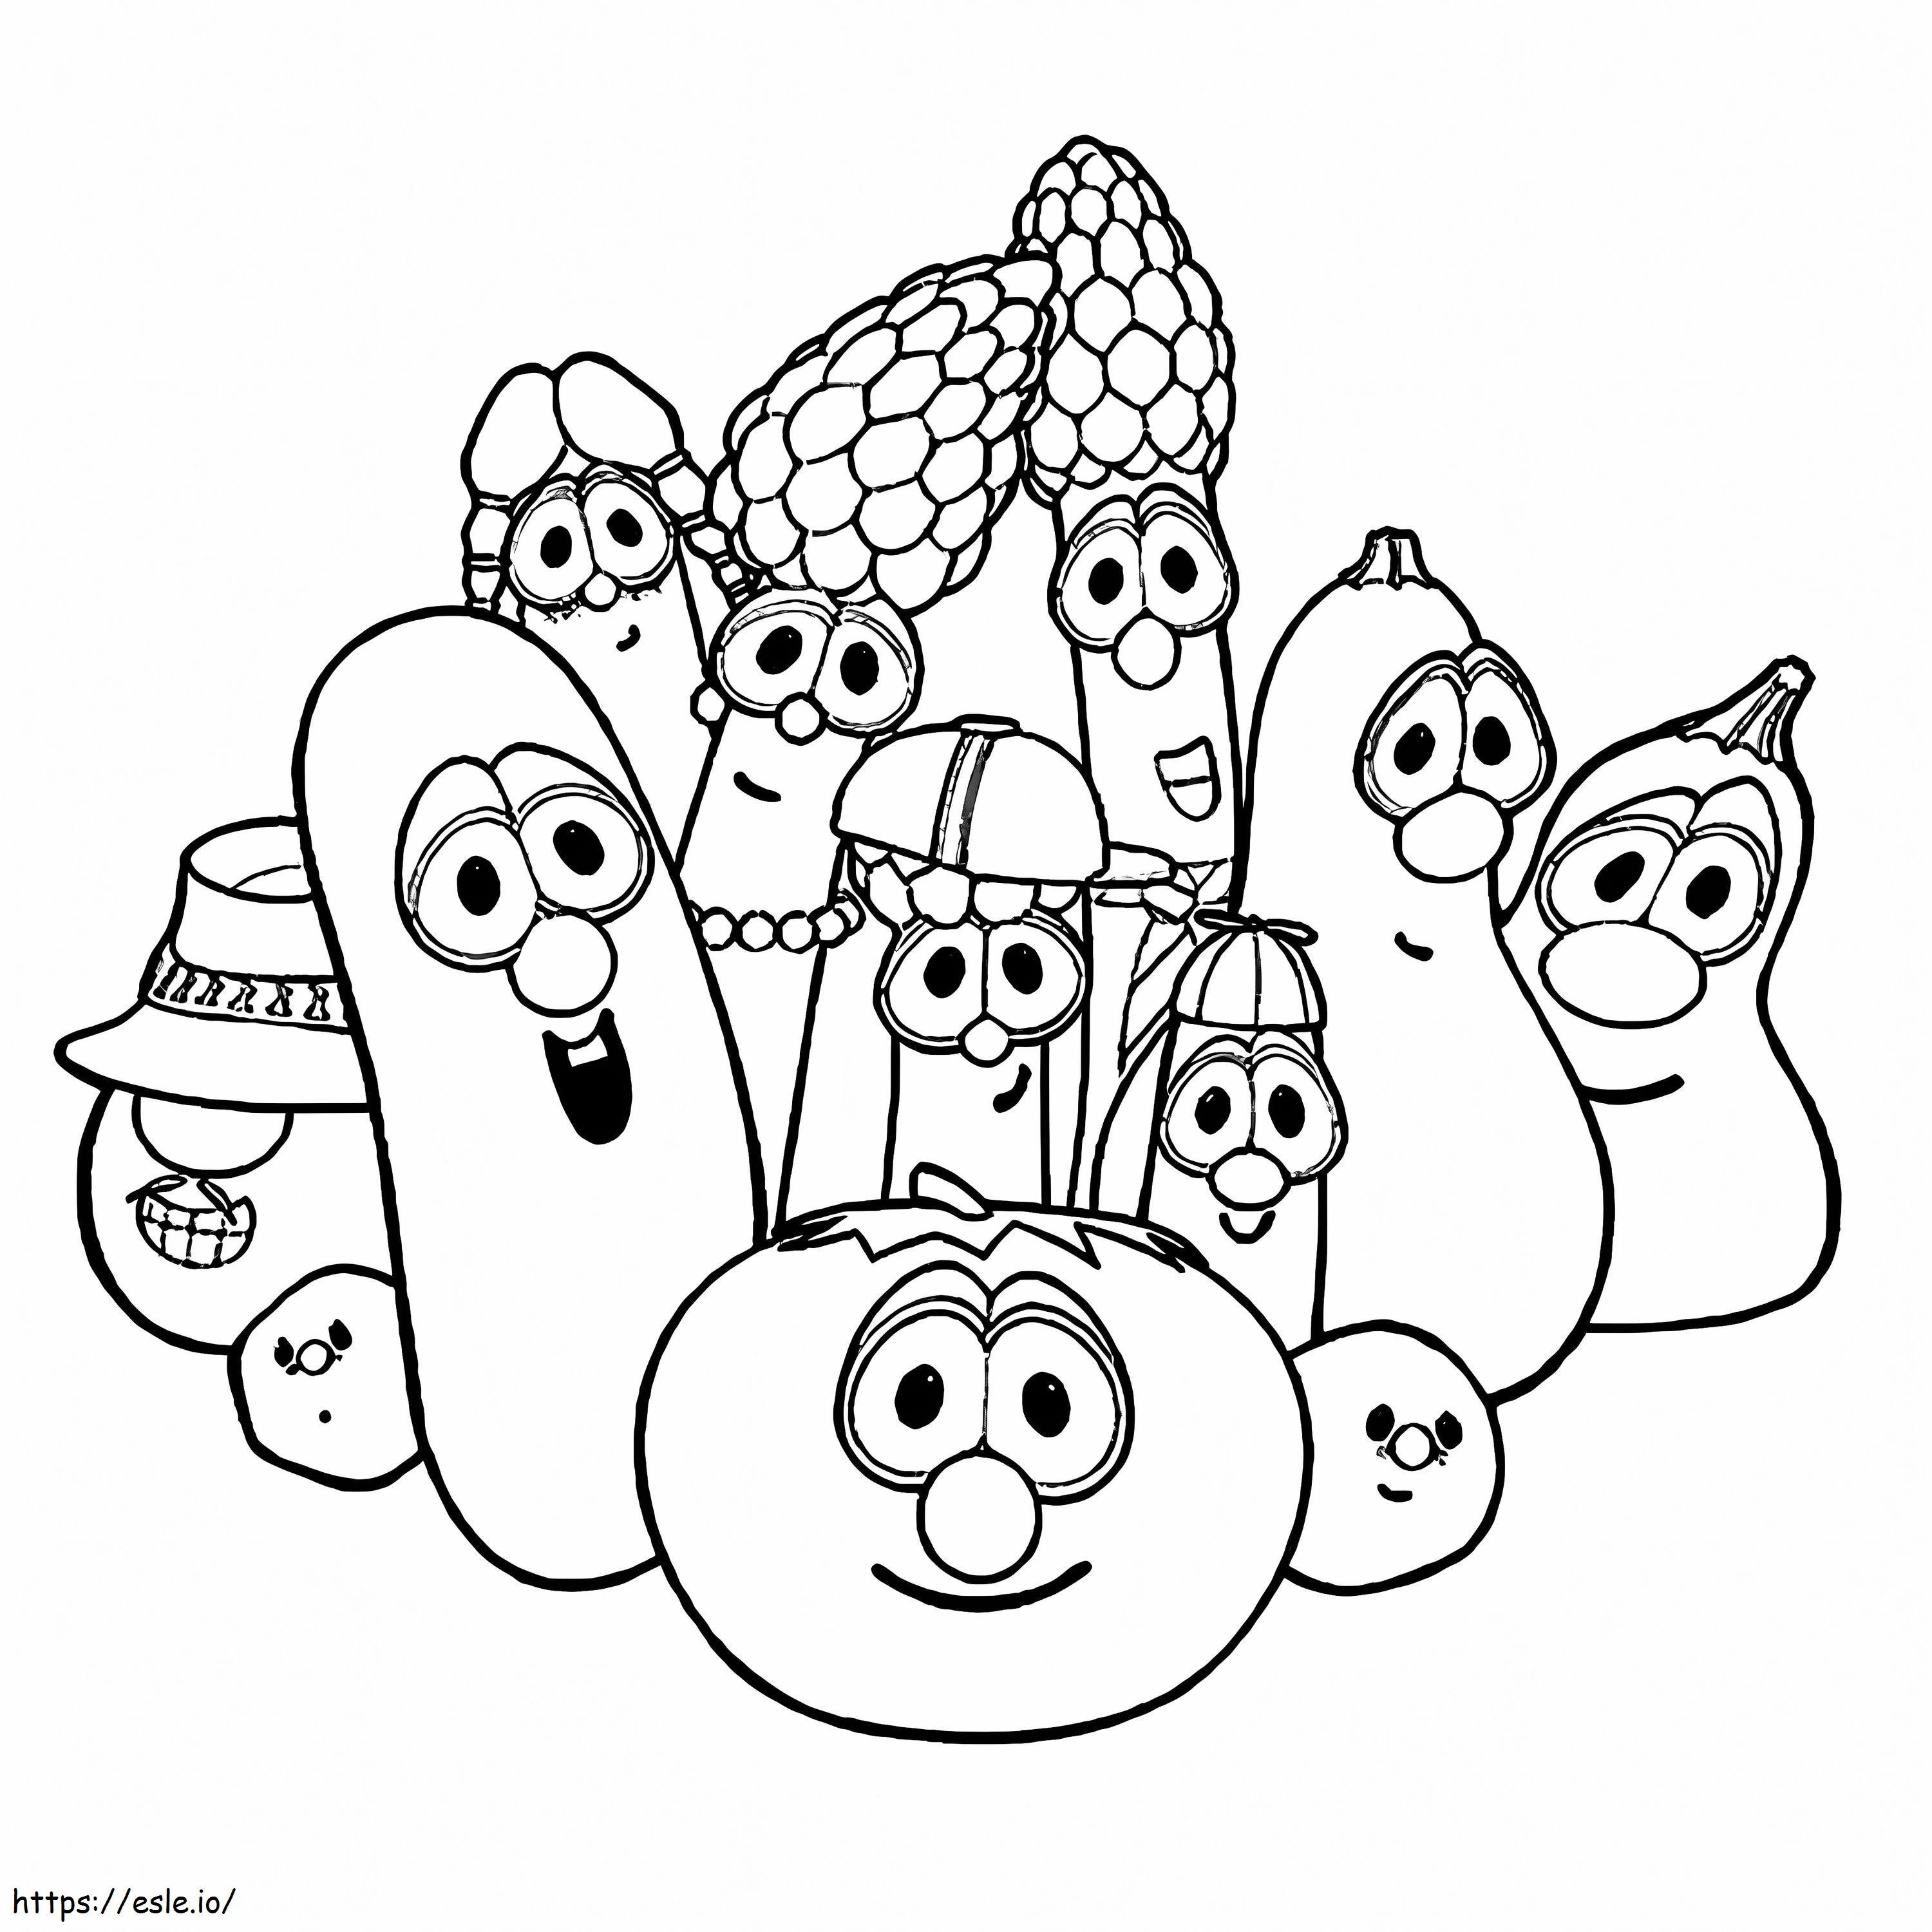 Warzywa z kreskówek kolorowanka